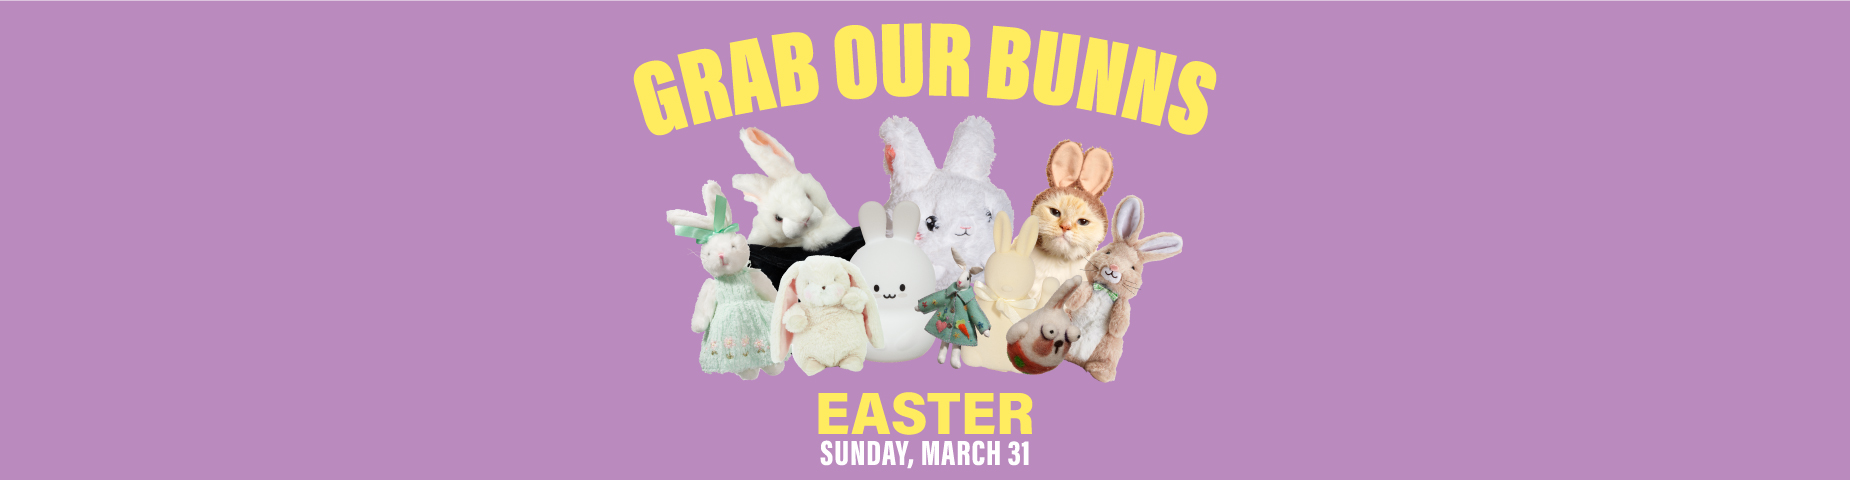 GRAB OUR BUNNS: Easter, Sun. Mar. 31